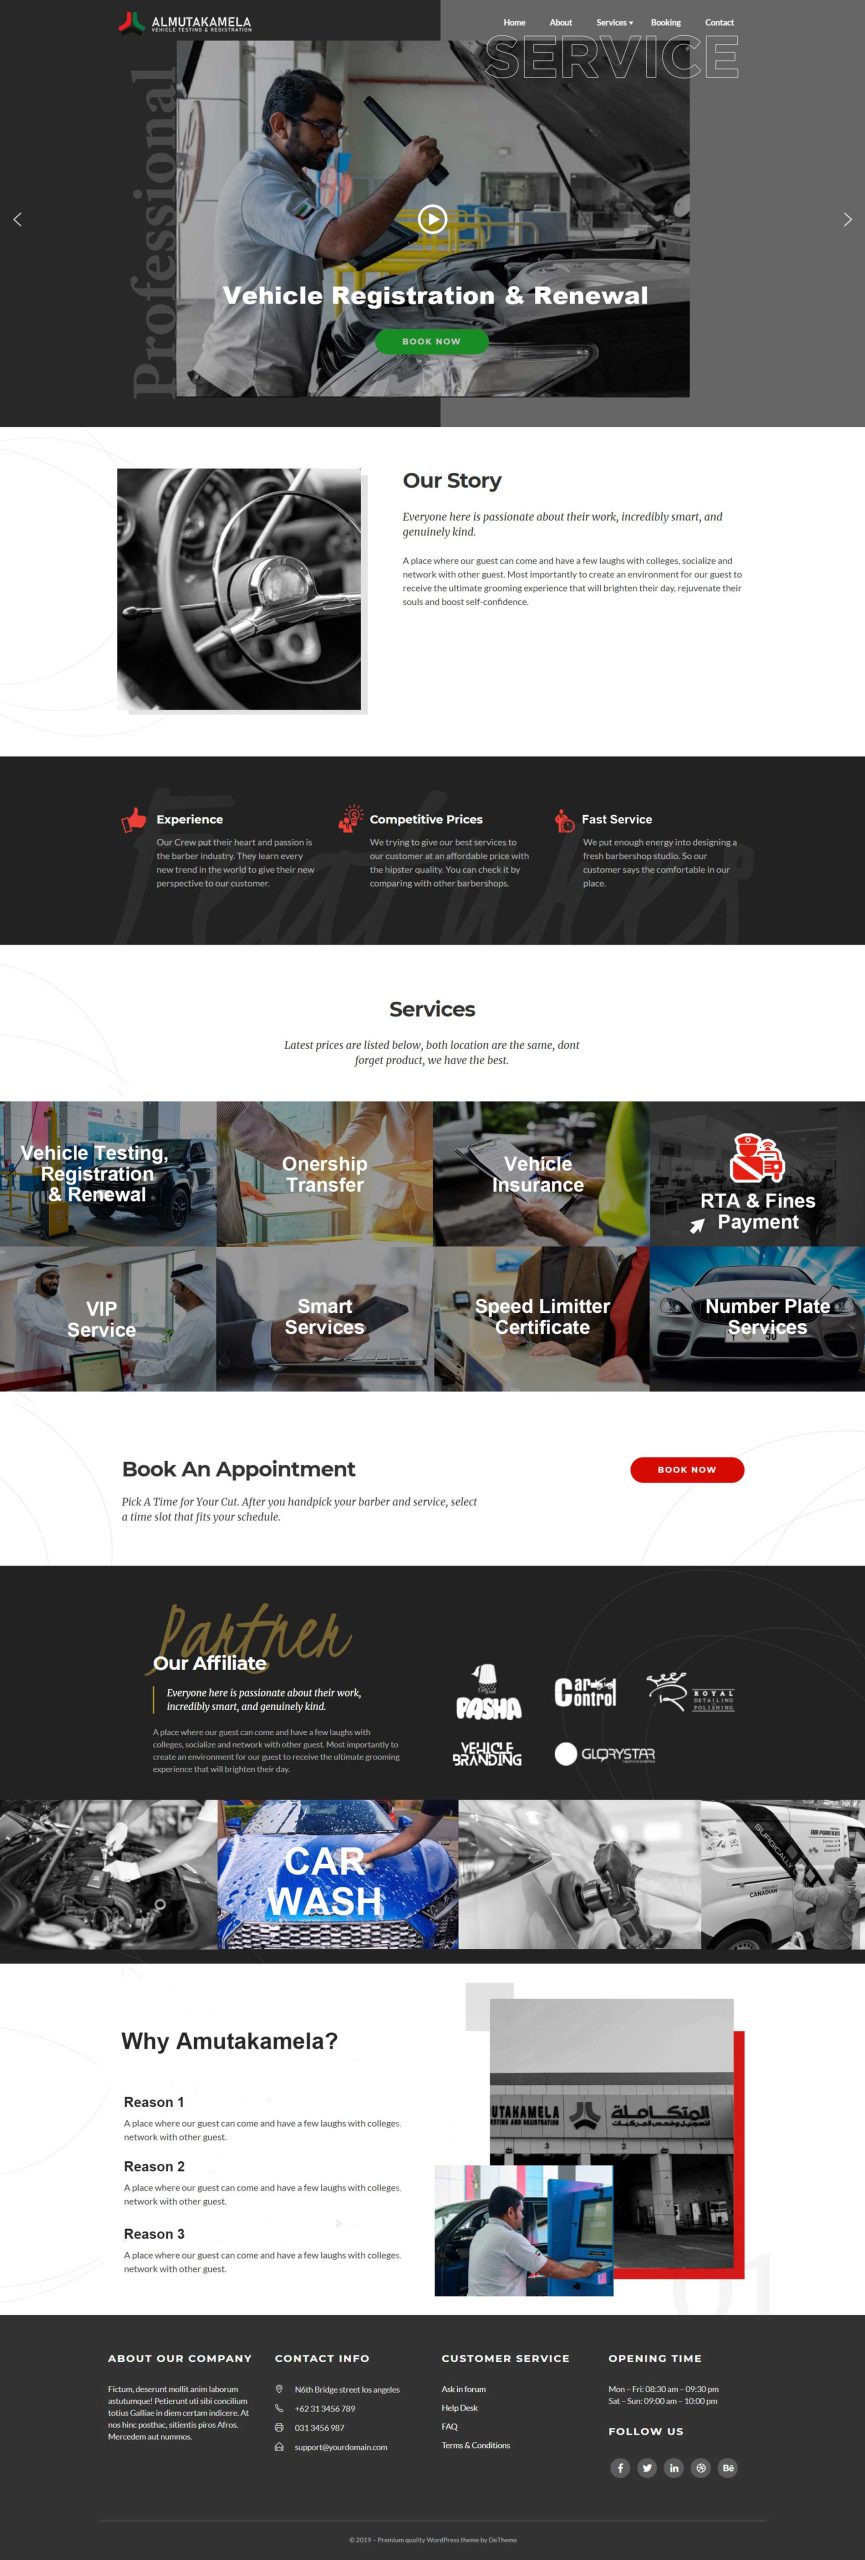 Al-mutakamela homepage design - Dubai - 360beats Portfolio